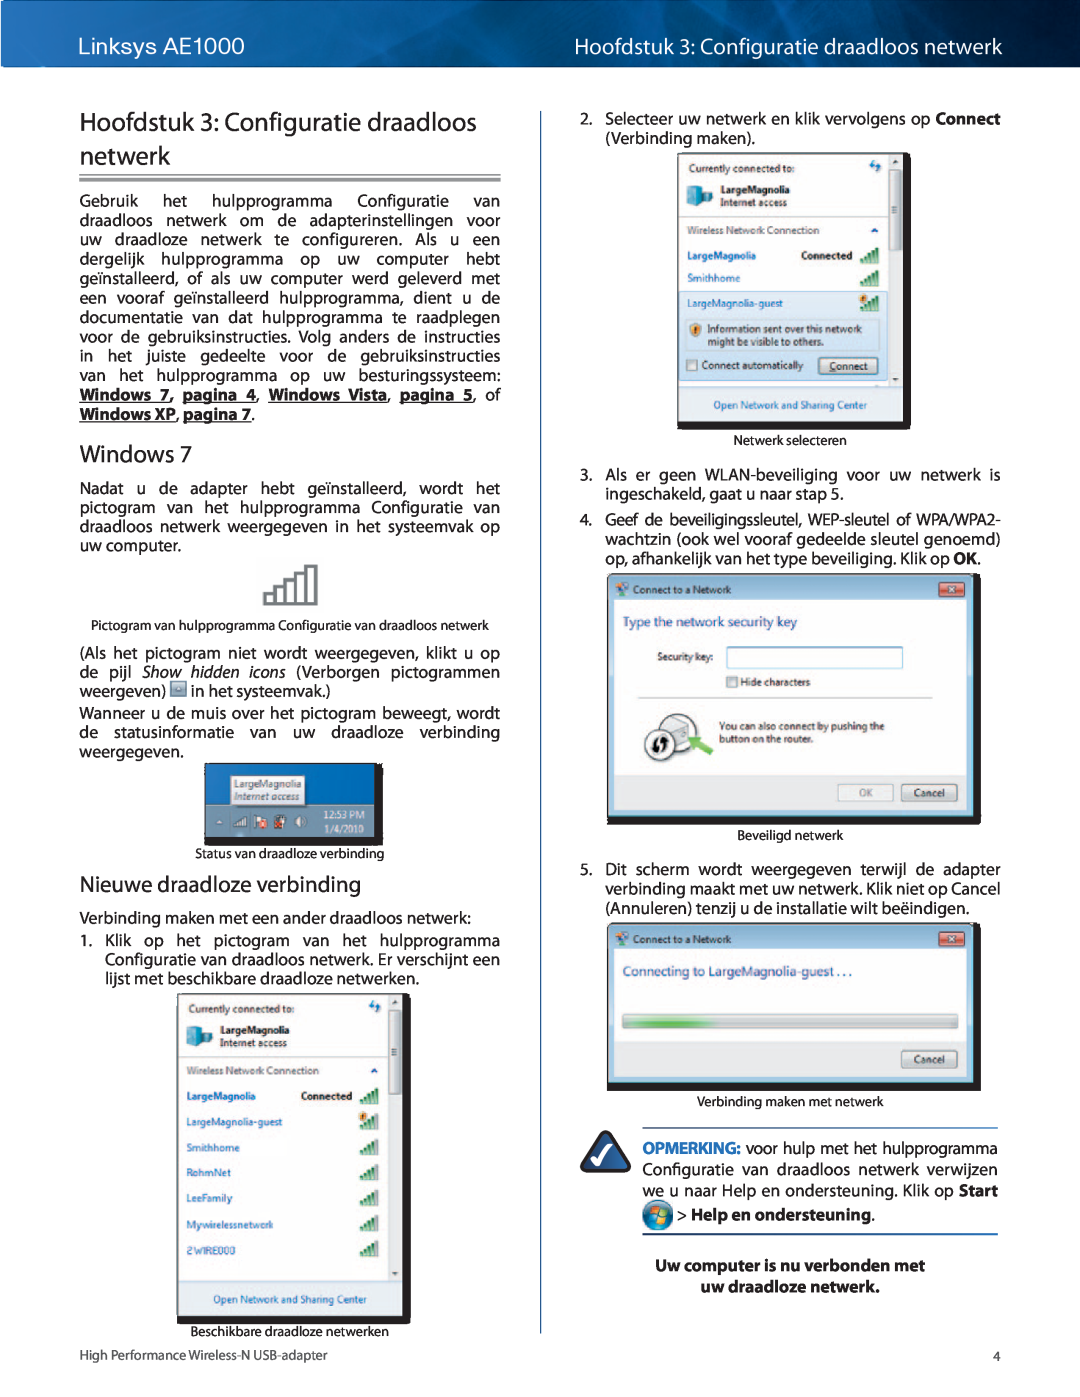 Cisco Systems manual Hoofdstuk 3 Configuratie draadloos netwerk, Windows, Nieuwe draadloze verbinding, Linksys AE1000 